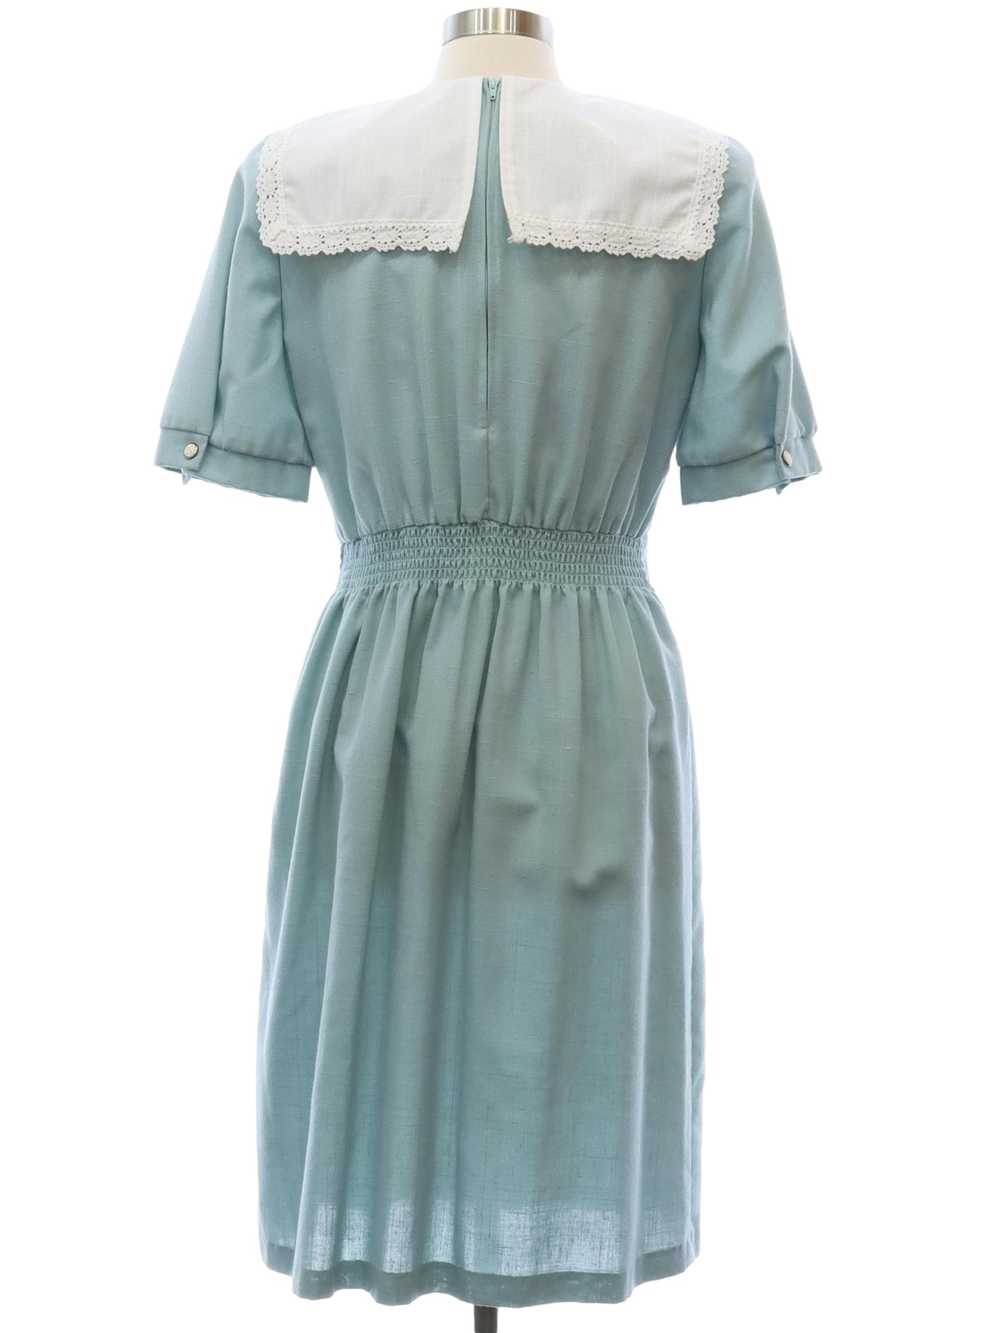 1980's Breli Original Totally 80s Secretary Dress - image 3